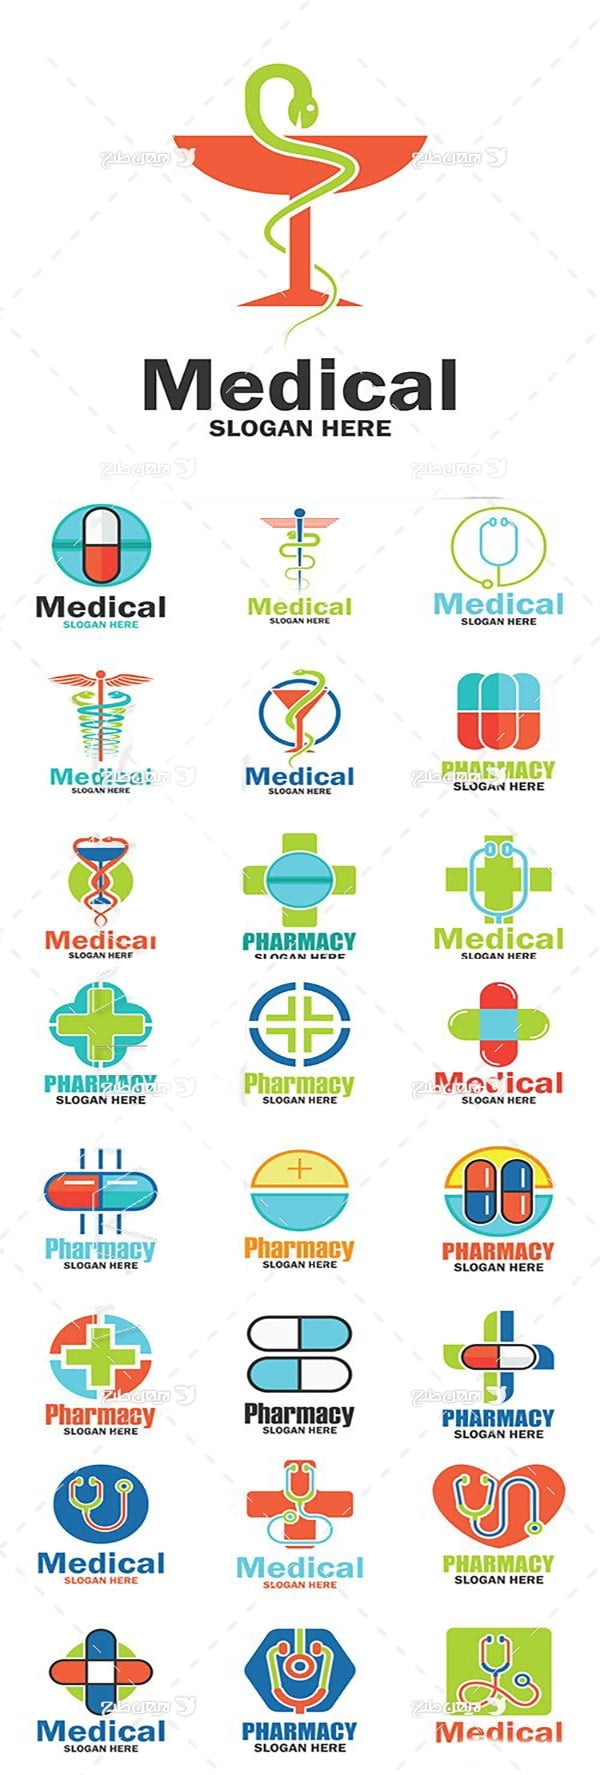 لوگو با موضوع پزشکی